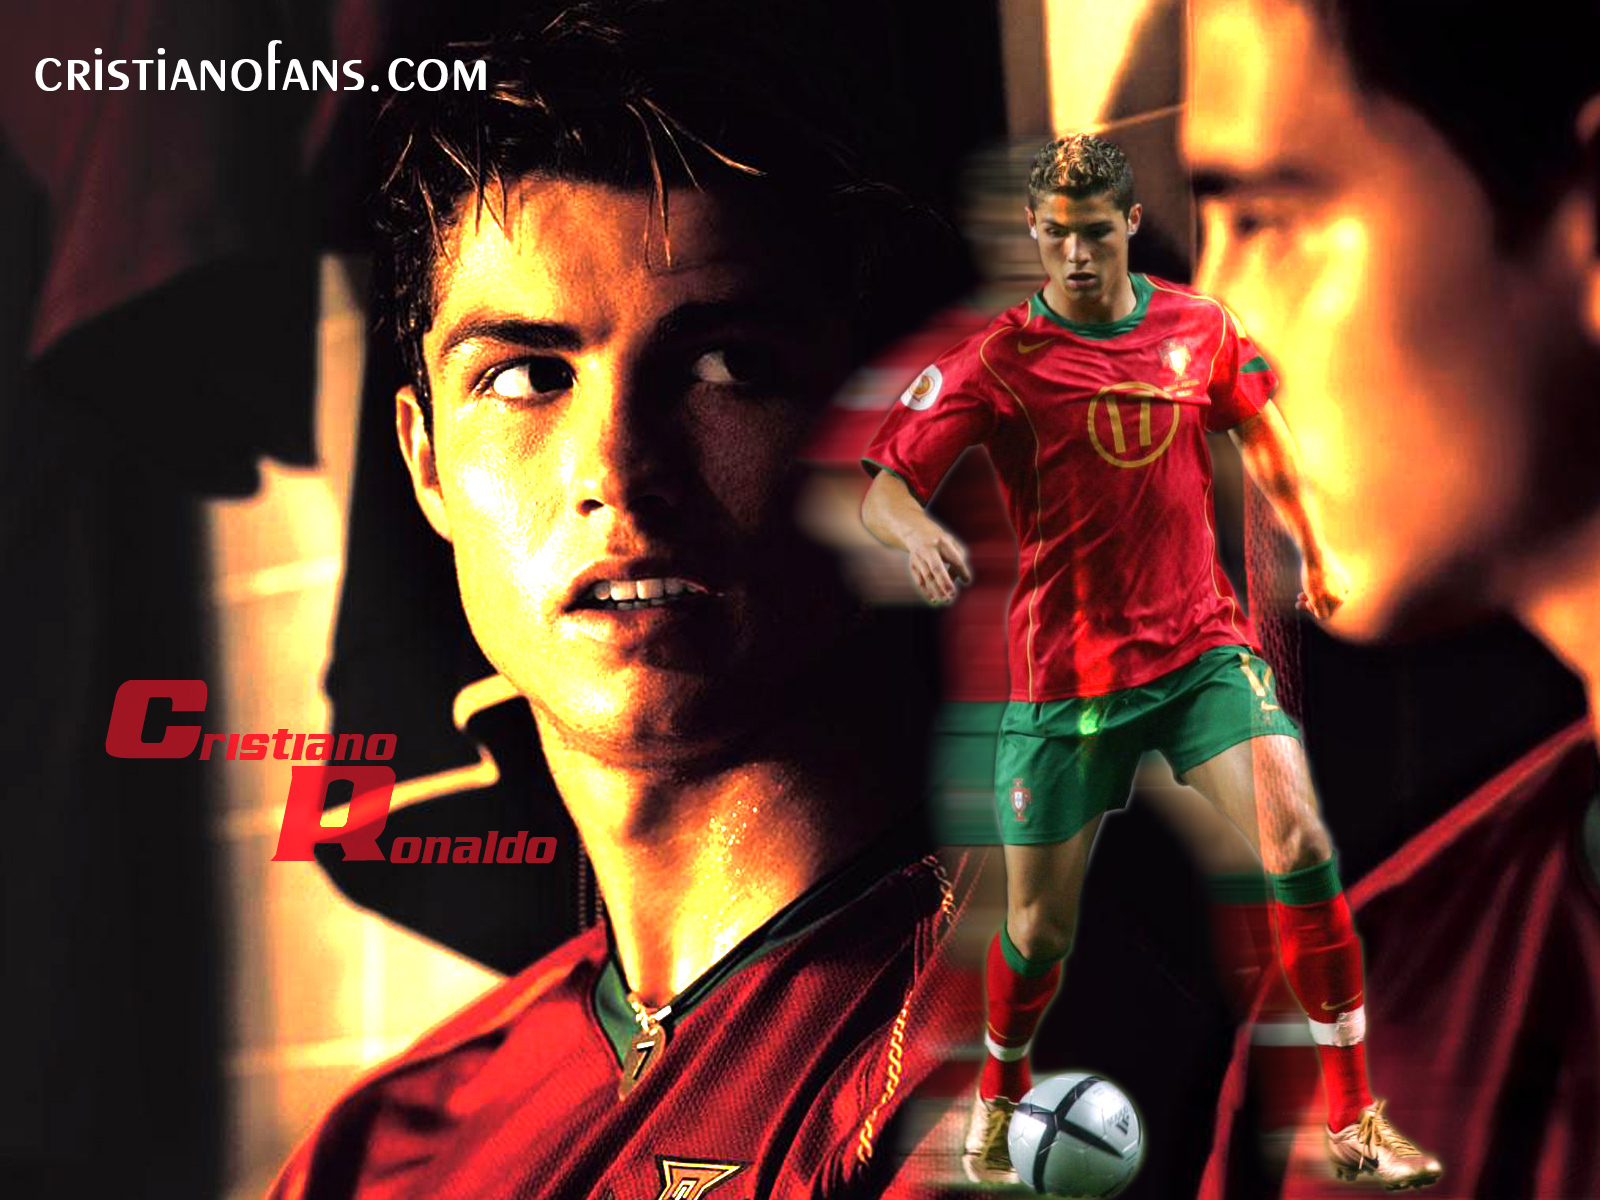 http://4.bp.blogspot.com/-OO66bgbFt1c/Tdigsy5EmqI/AAAAAAAABRM/XdXffCzU5mI/s1600/Cristiano-Ronaldo-Wallpaper-015.jpg